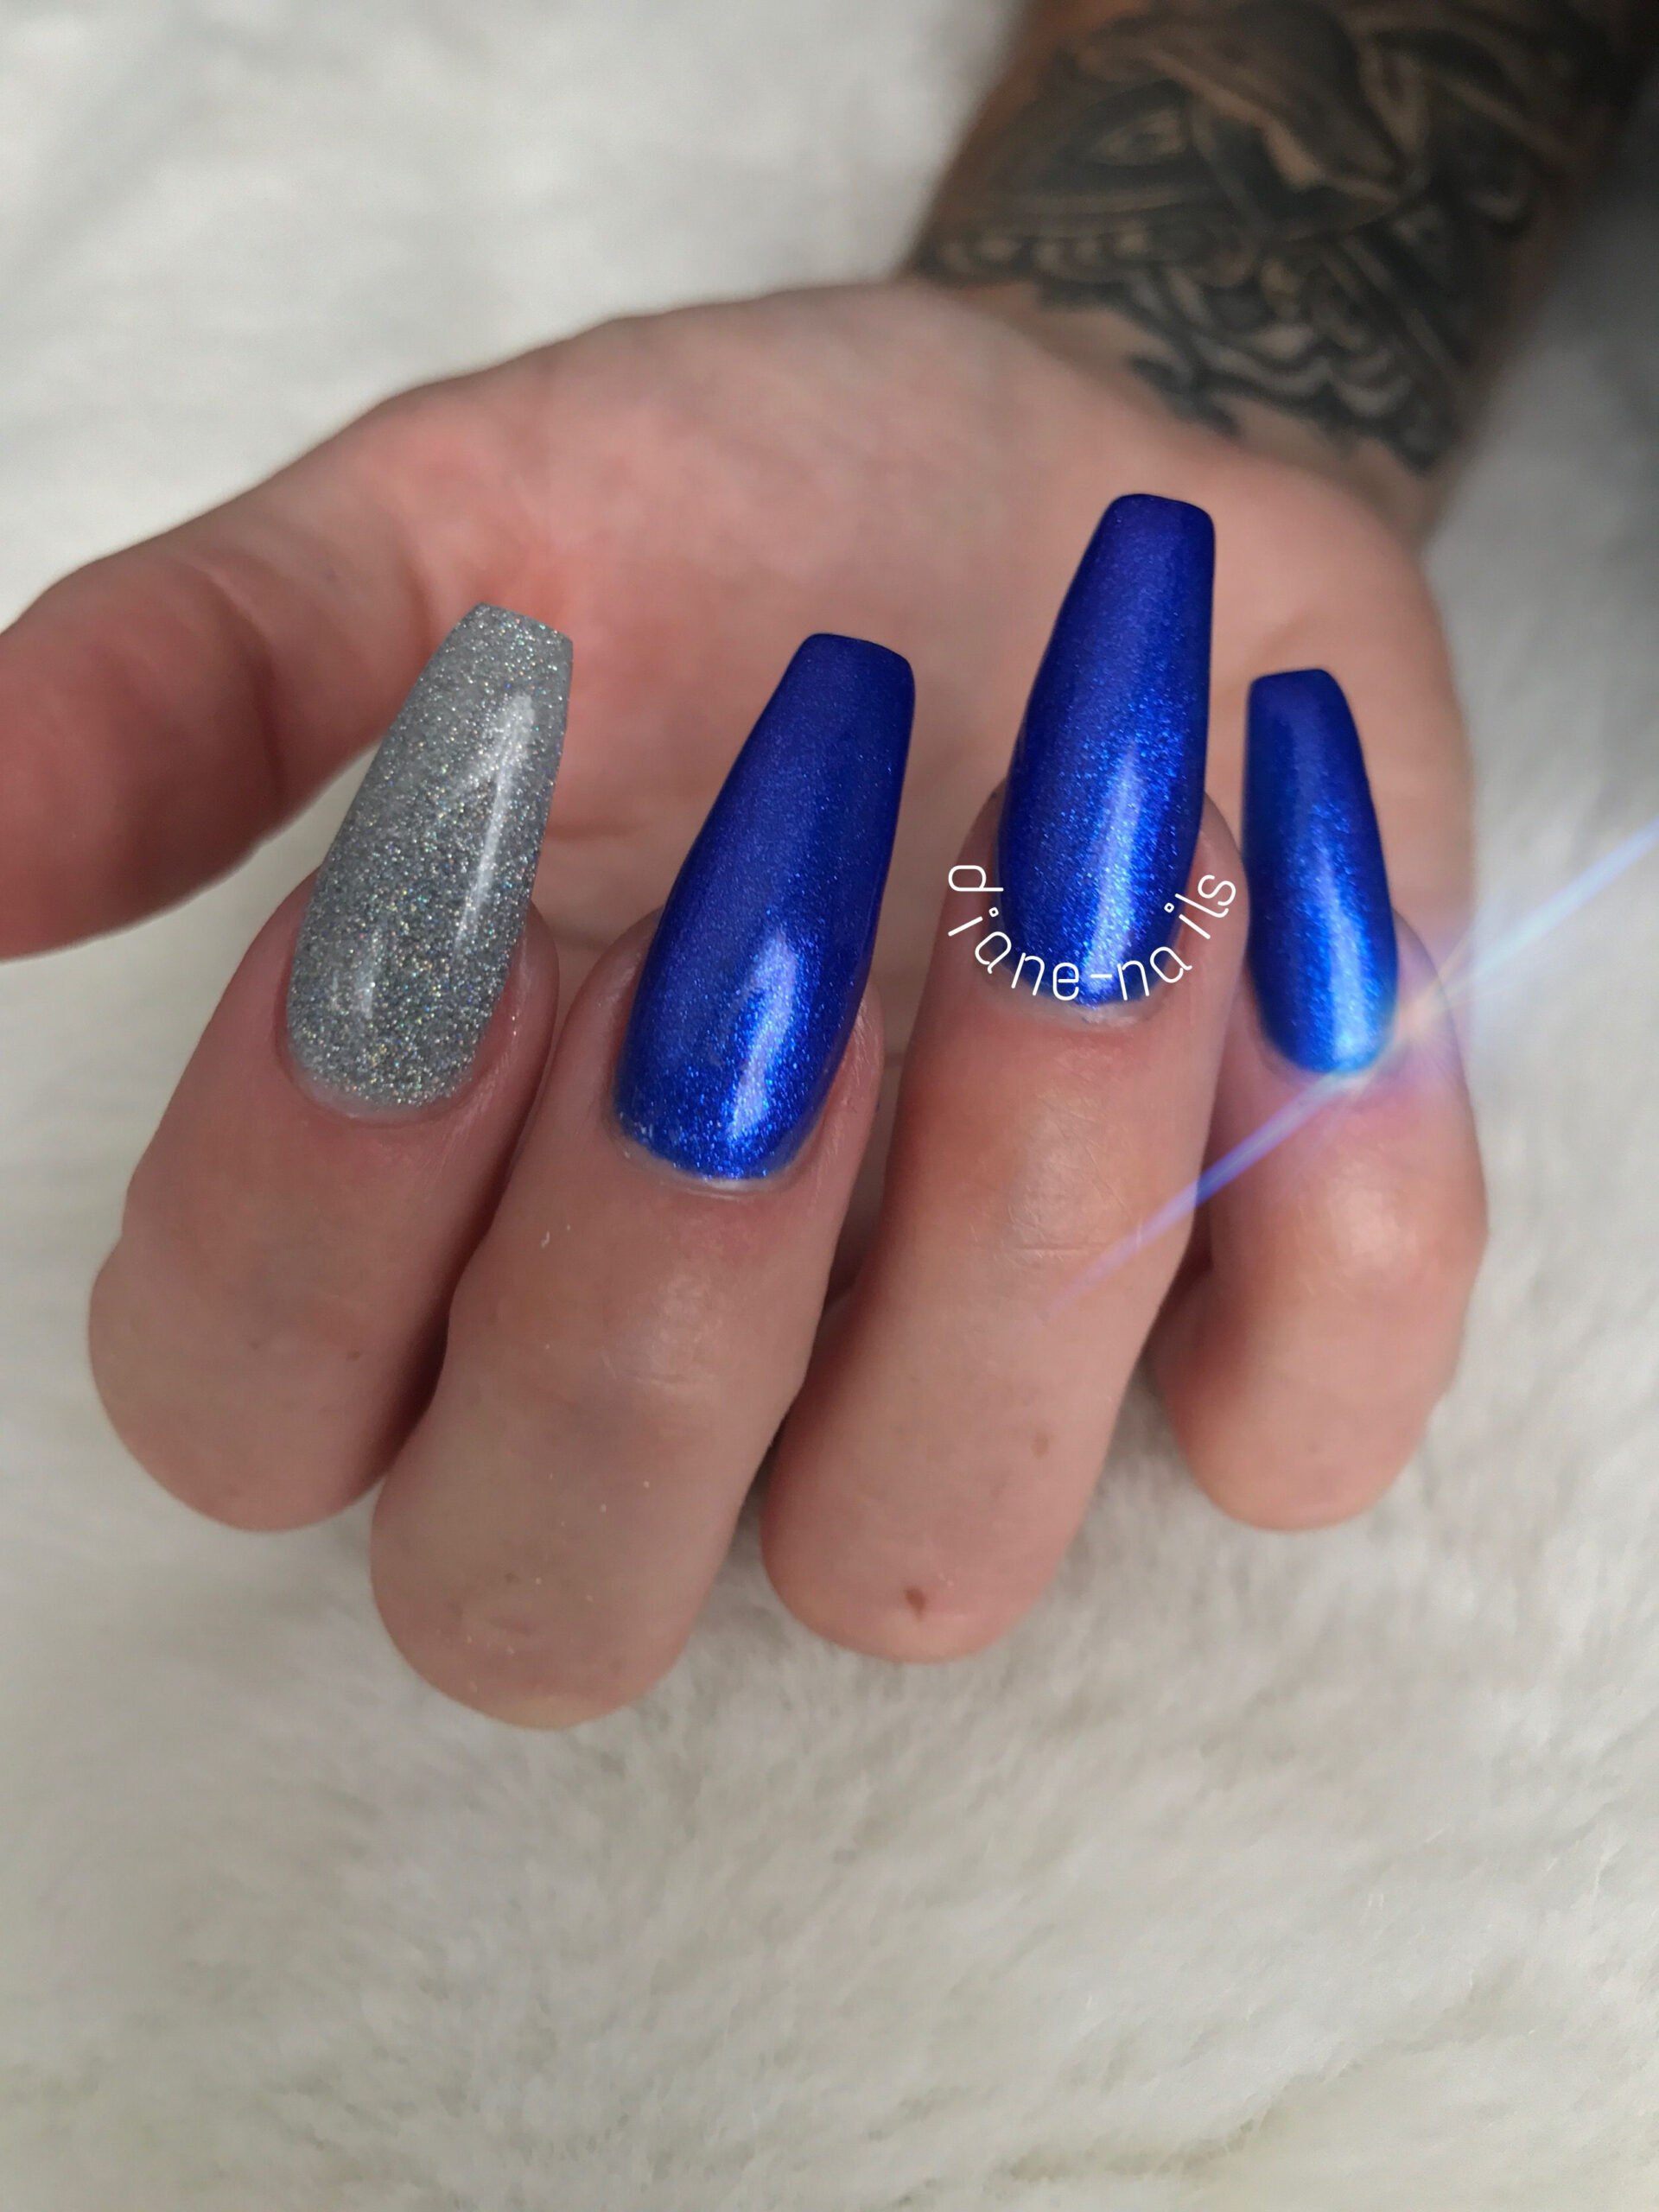 Metallic Blue Nails Argent Multicolore Ongle Bleu Nails, Beauty, Blue destiné Ongle Bleu Et Blanc vous pouvez essayer